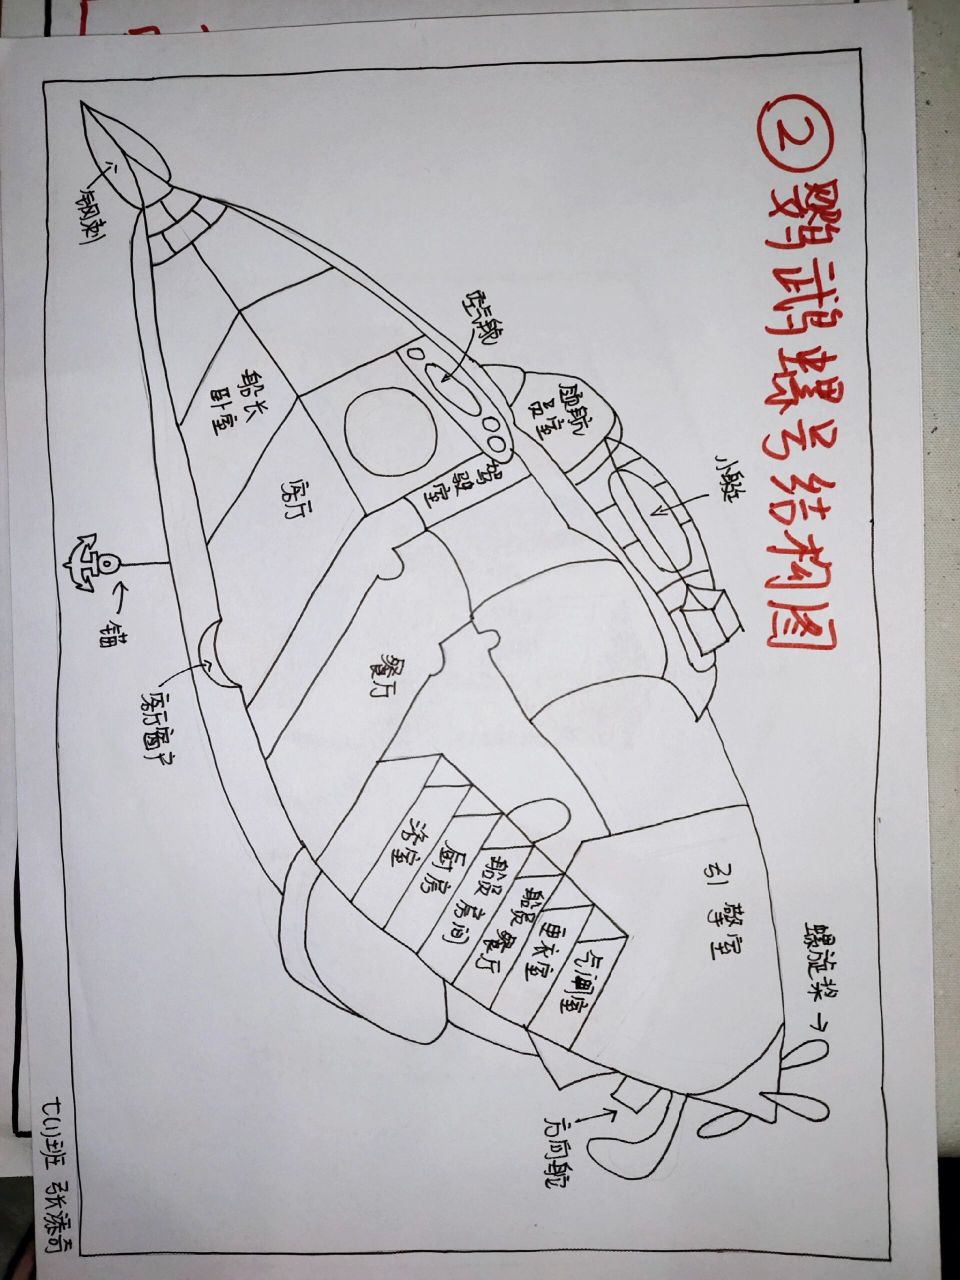 鹦鹉螺号路线图 手绘图片